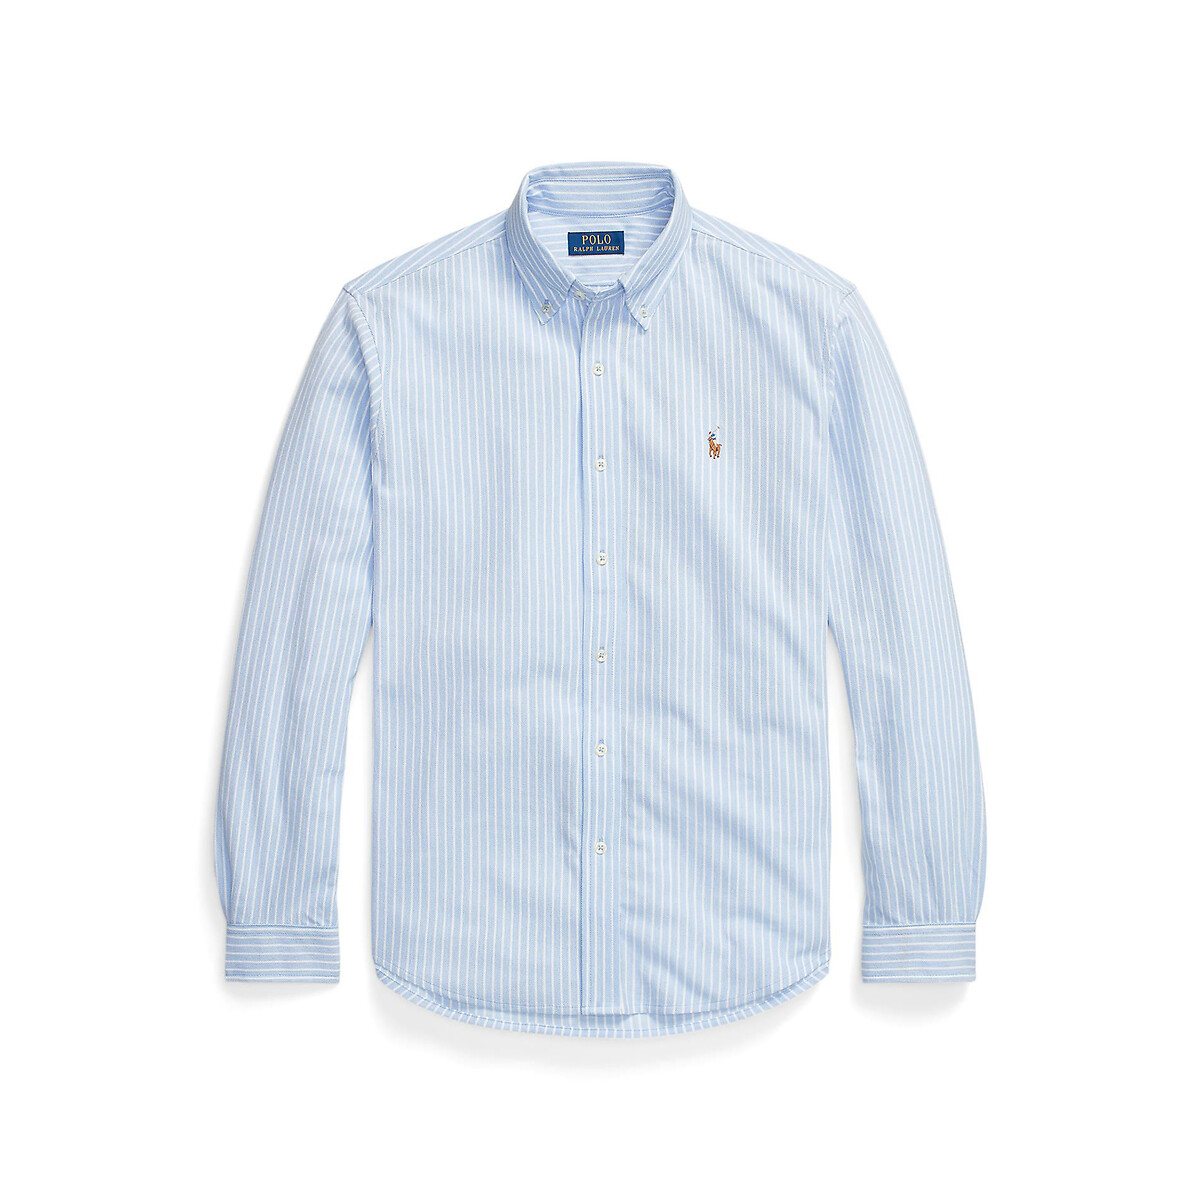 Рубашка из хлопковой ткани оксфорд и сетки  S синий LaRedoute, размер S - фото 1